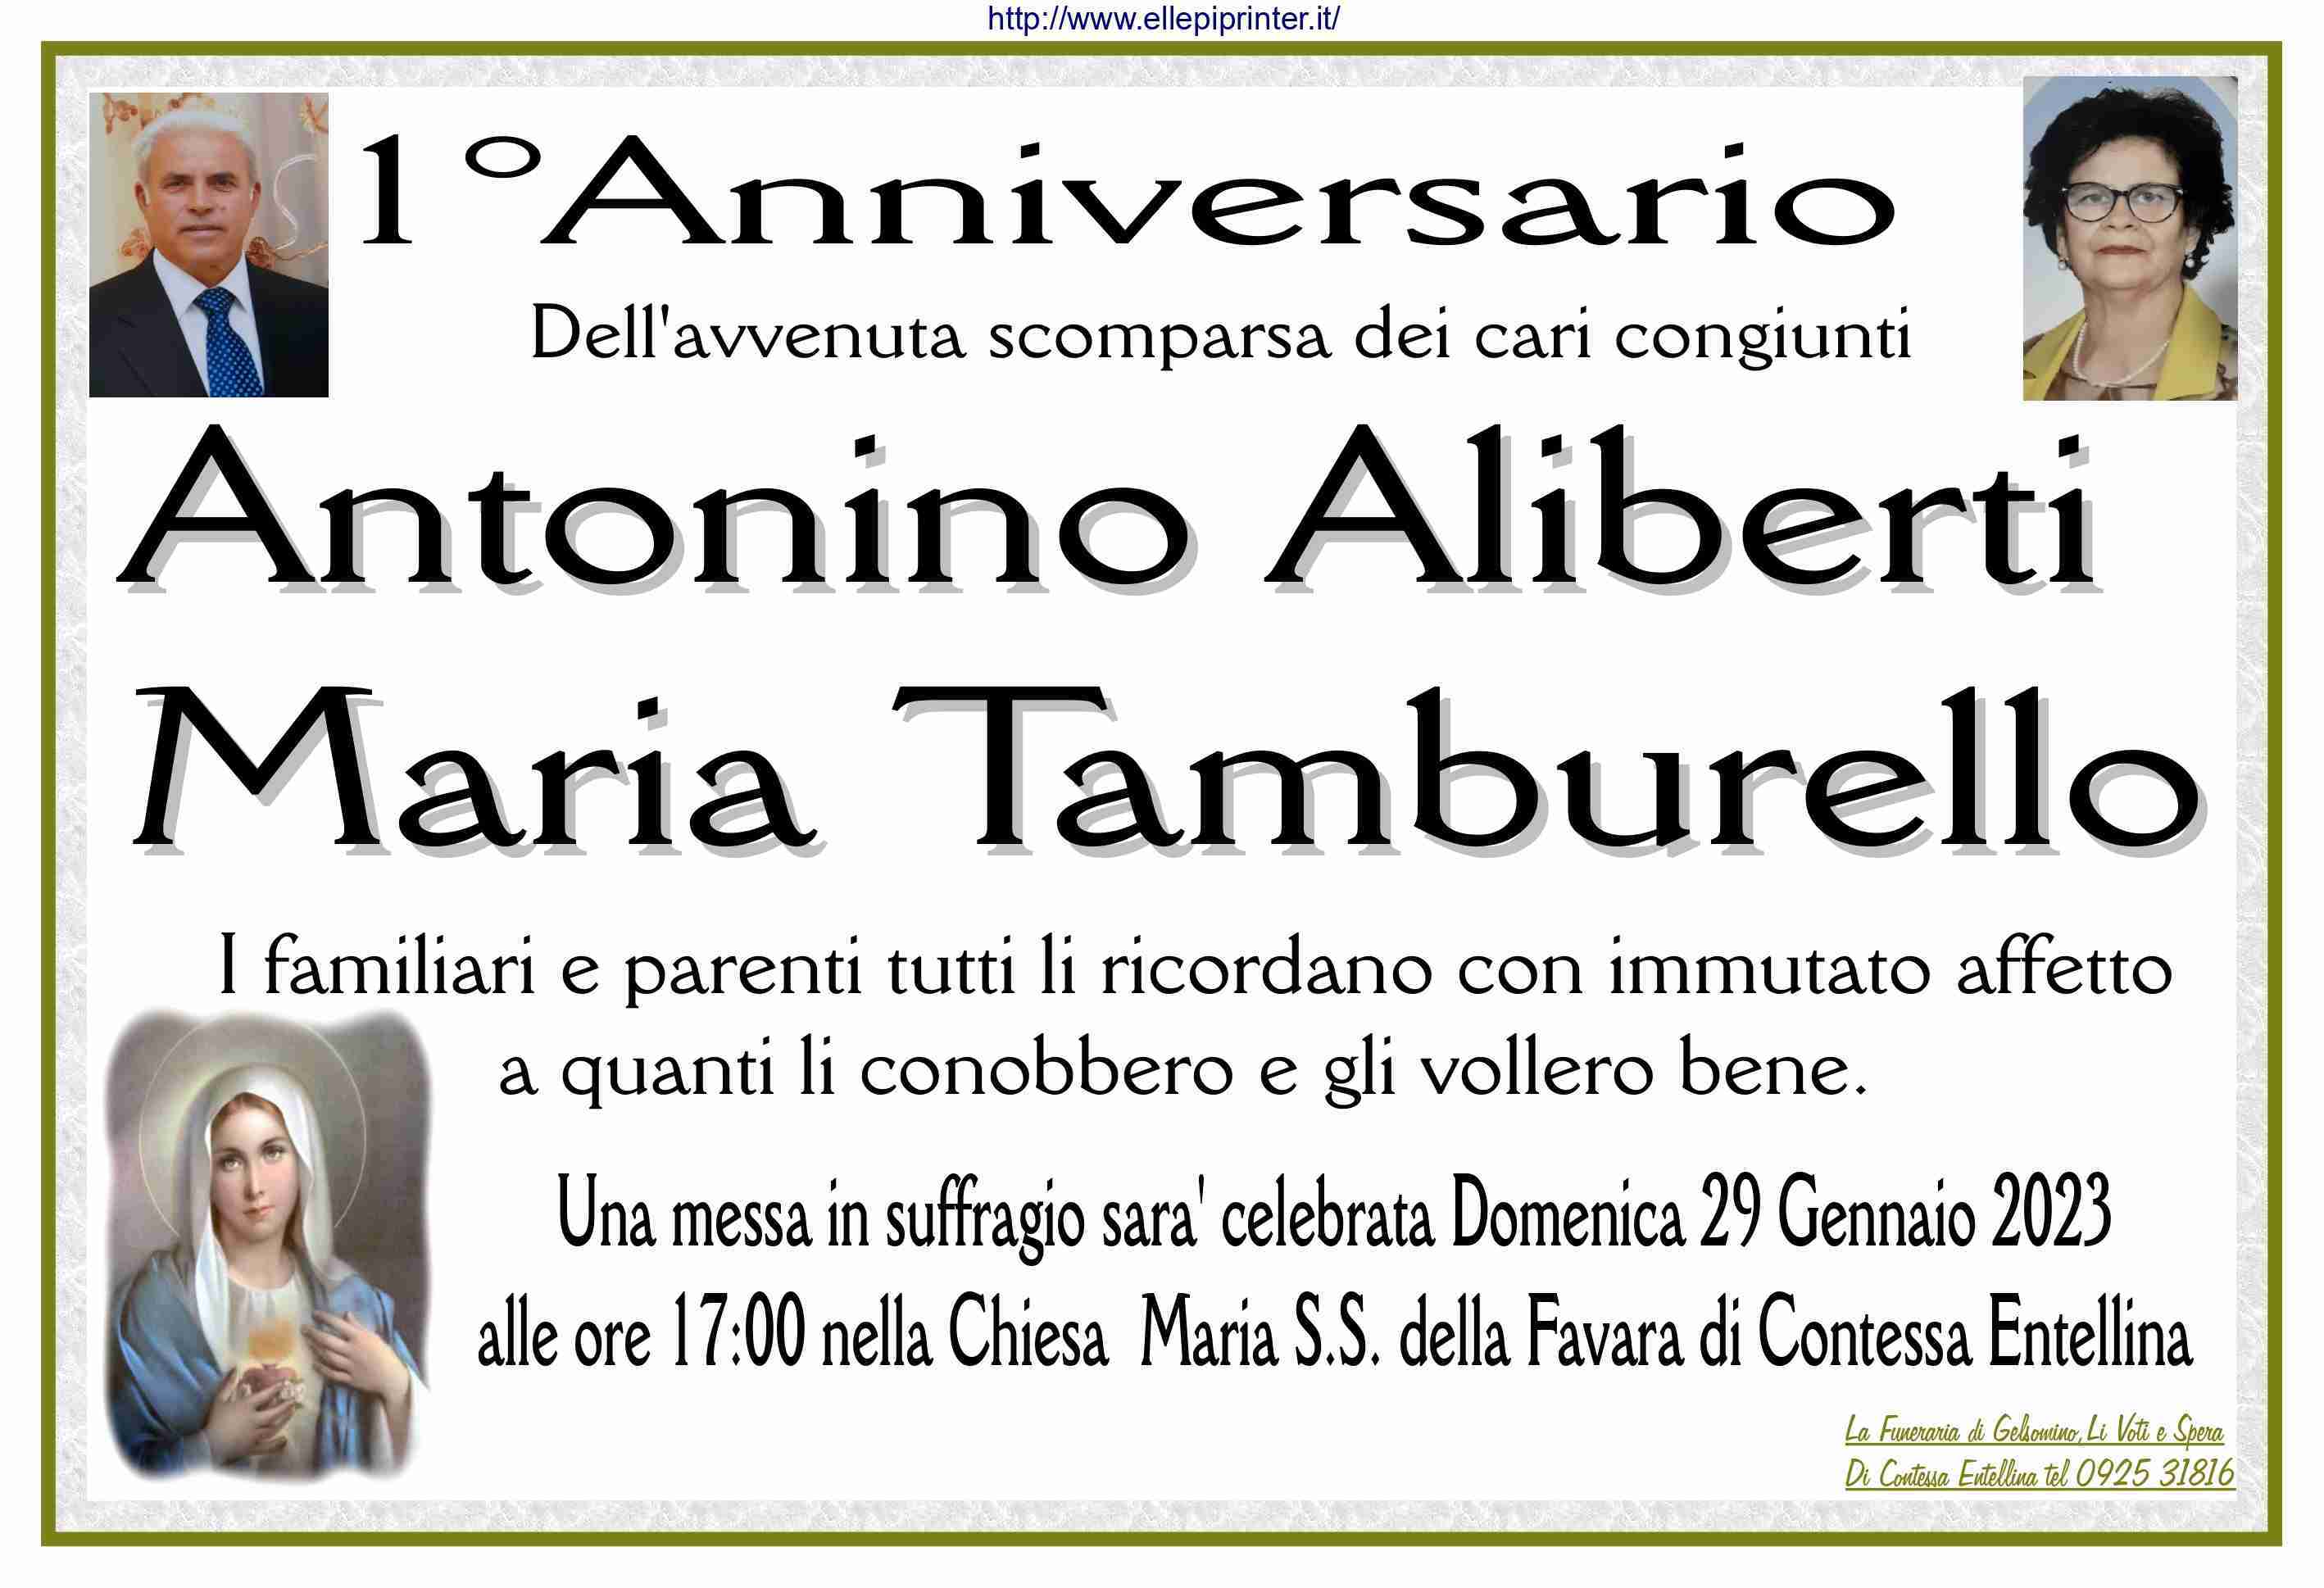 Antonino Aliberti e Maria Tamburello